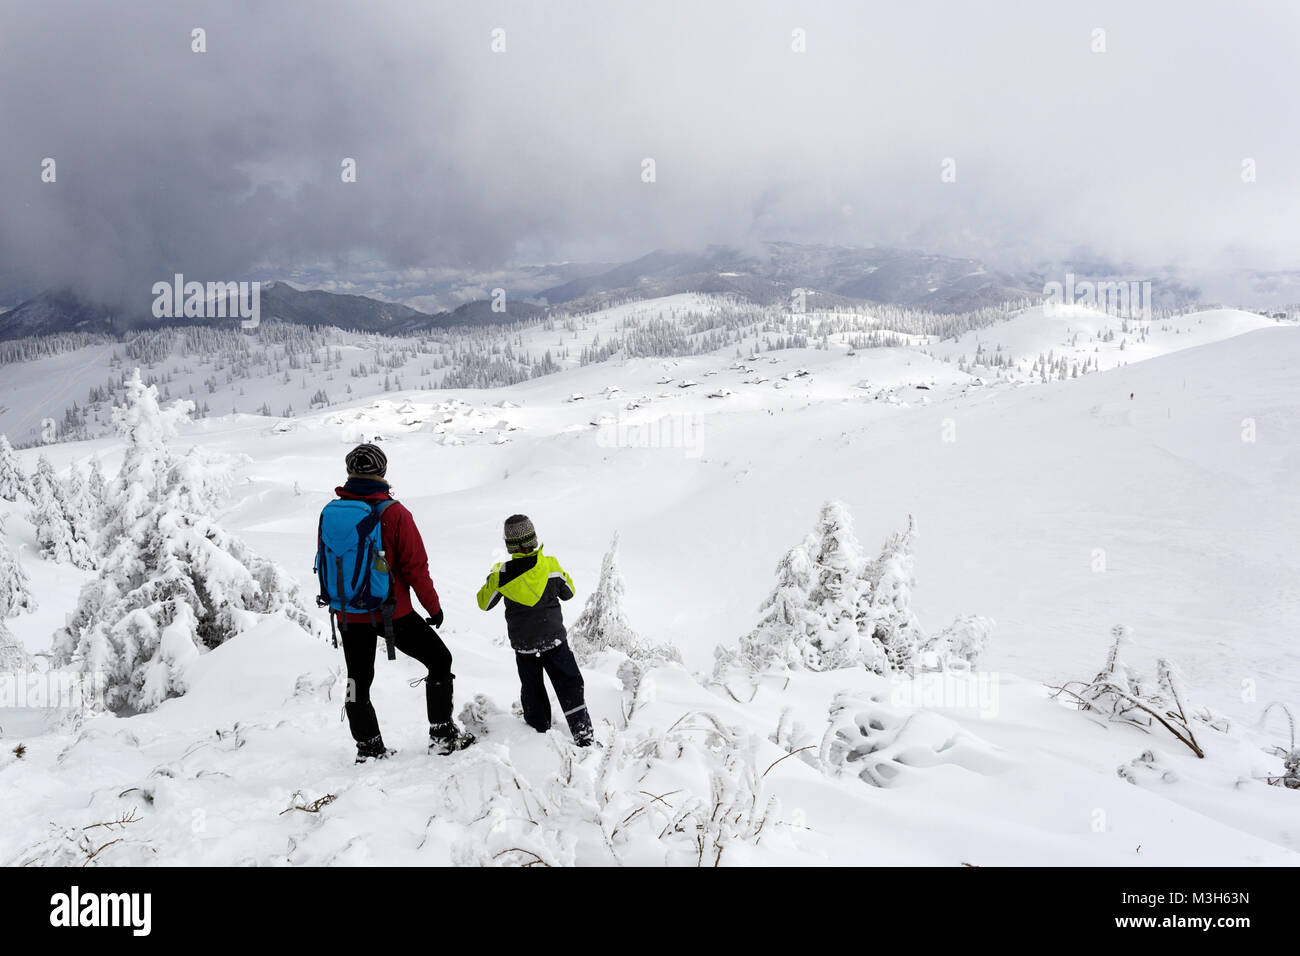 La mère et le fils debout sur le sommet d'une montagne couverte de neige à la recherche jusqu'à la vallée, Velika planina, la Slovénie. Banque D'Images